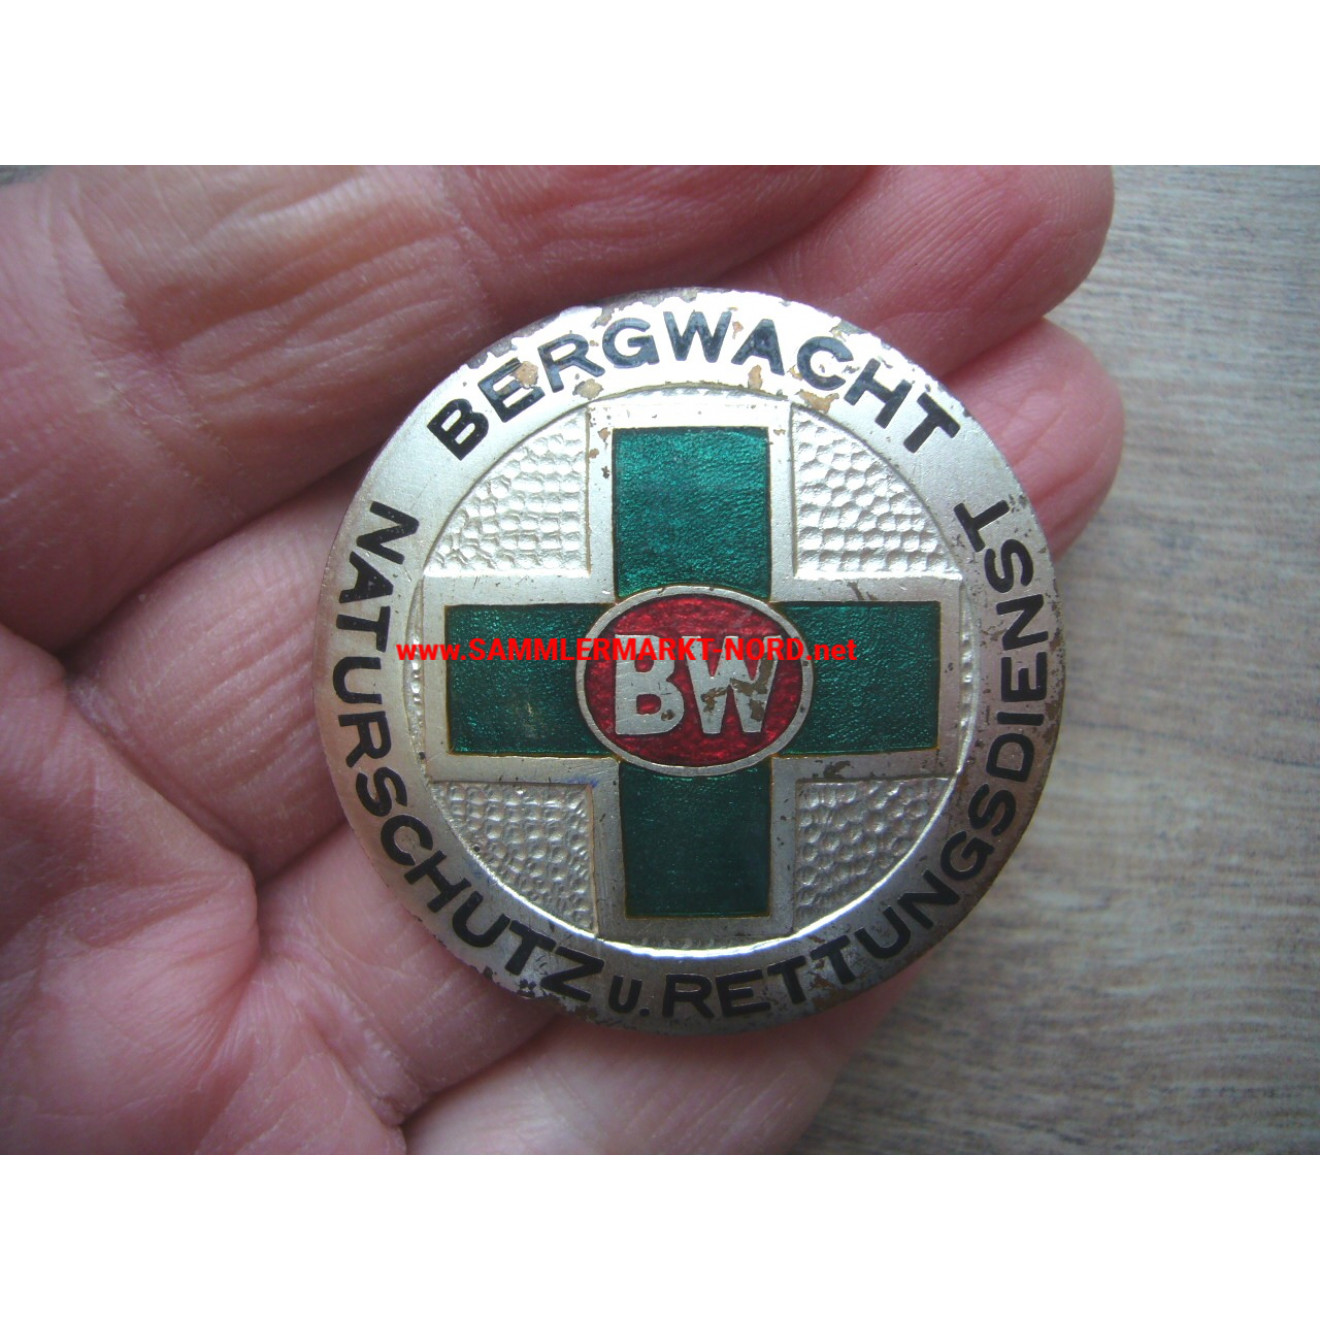 BW Bergwacht - Naturschutz und Rettungsdienst - Großes Dienstabzeichen (969)